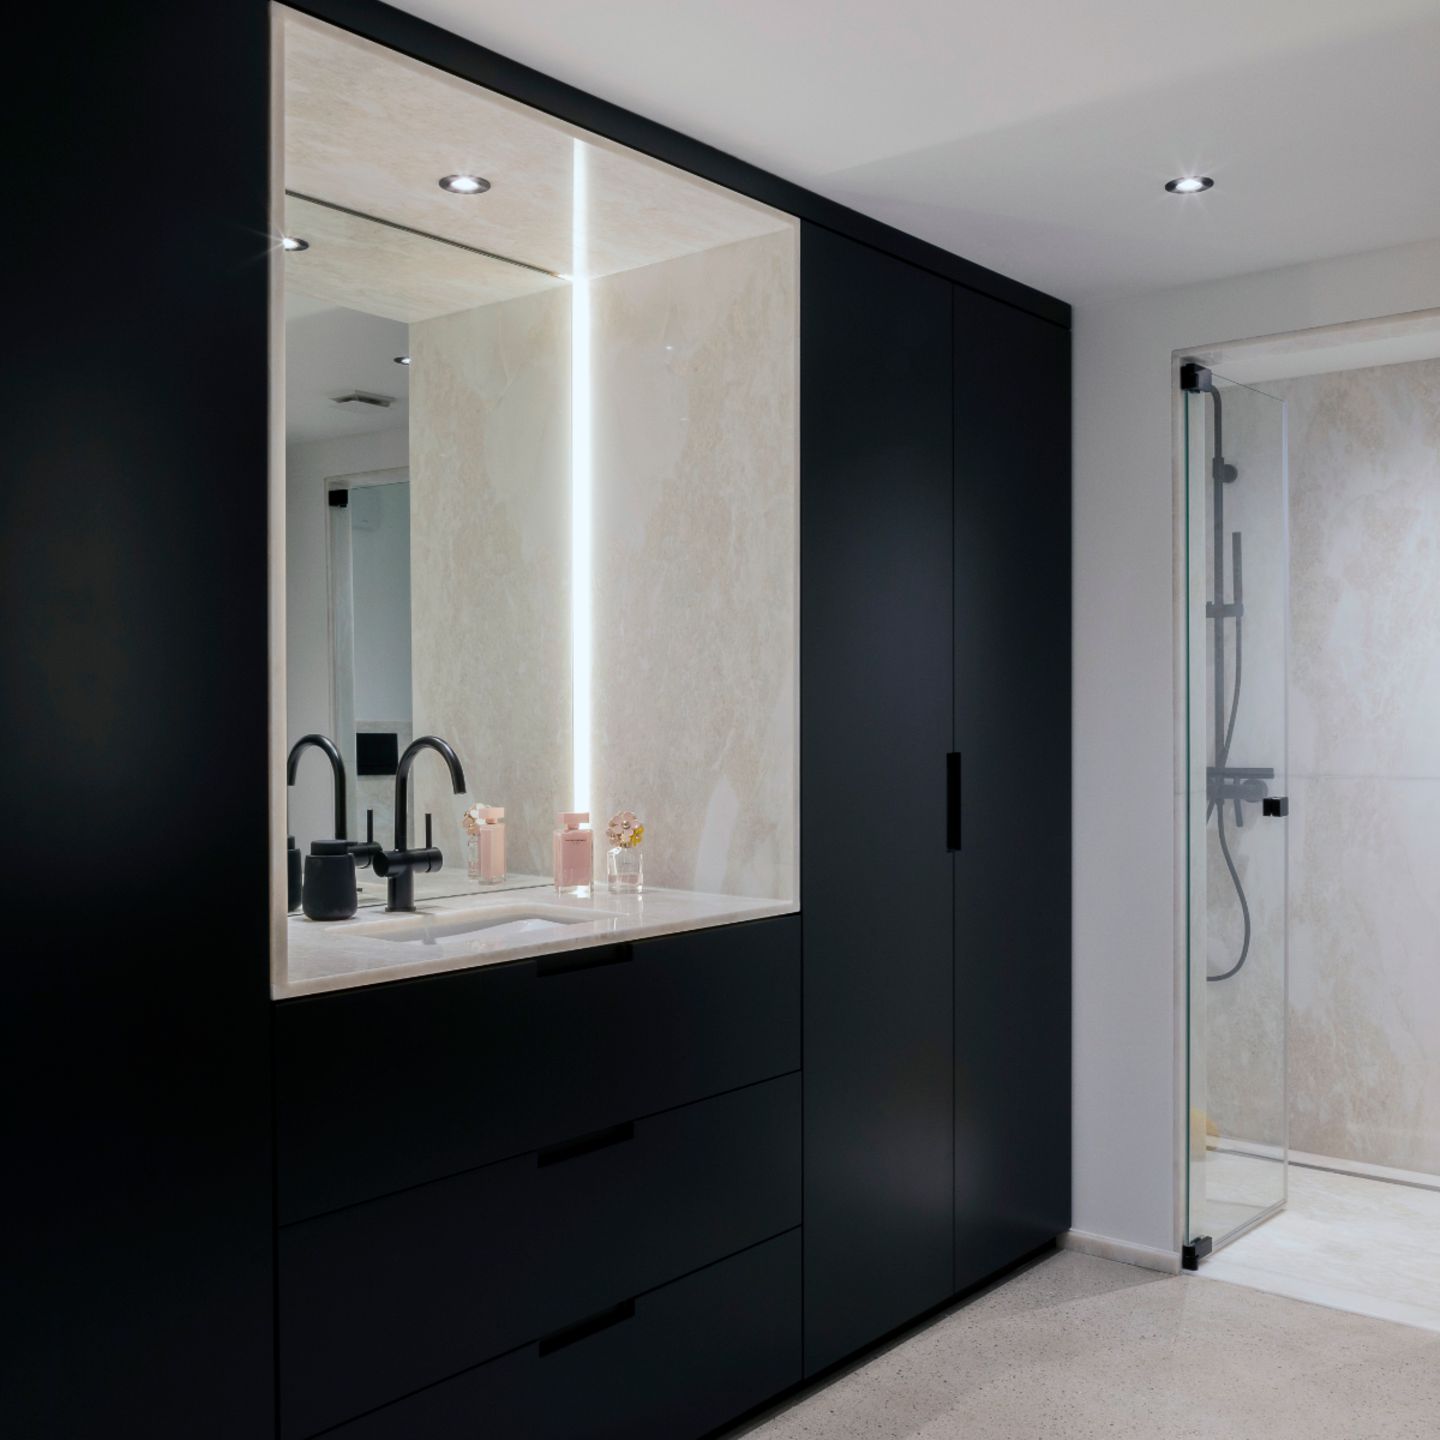 Badezimmer mit Stauraum in schwarz